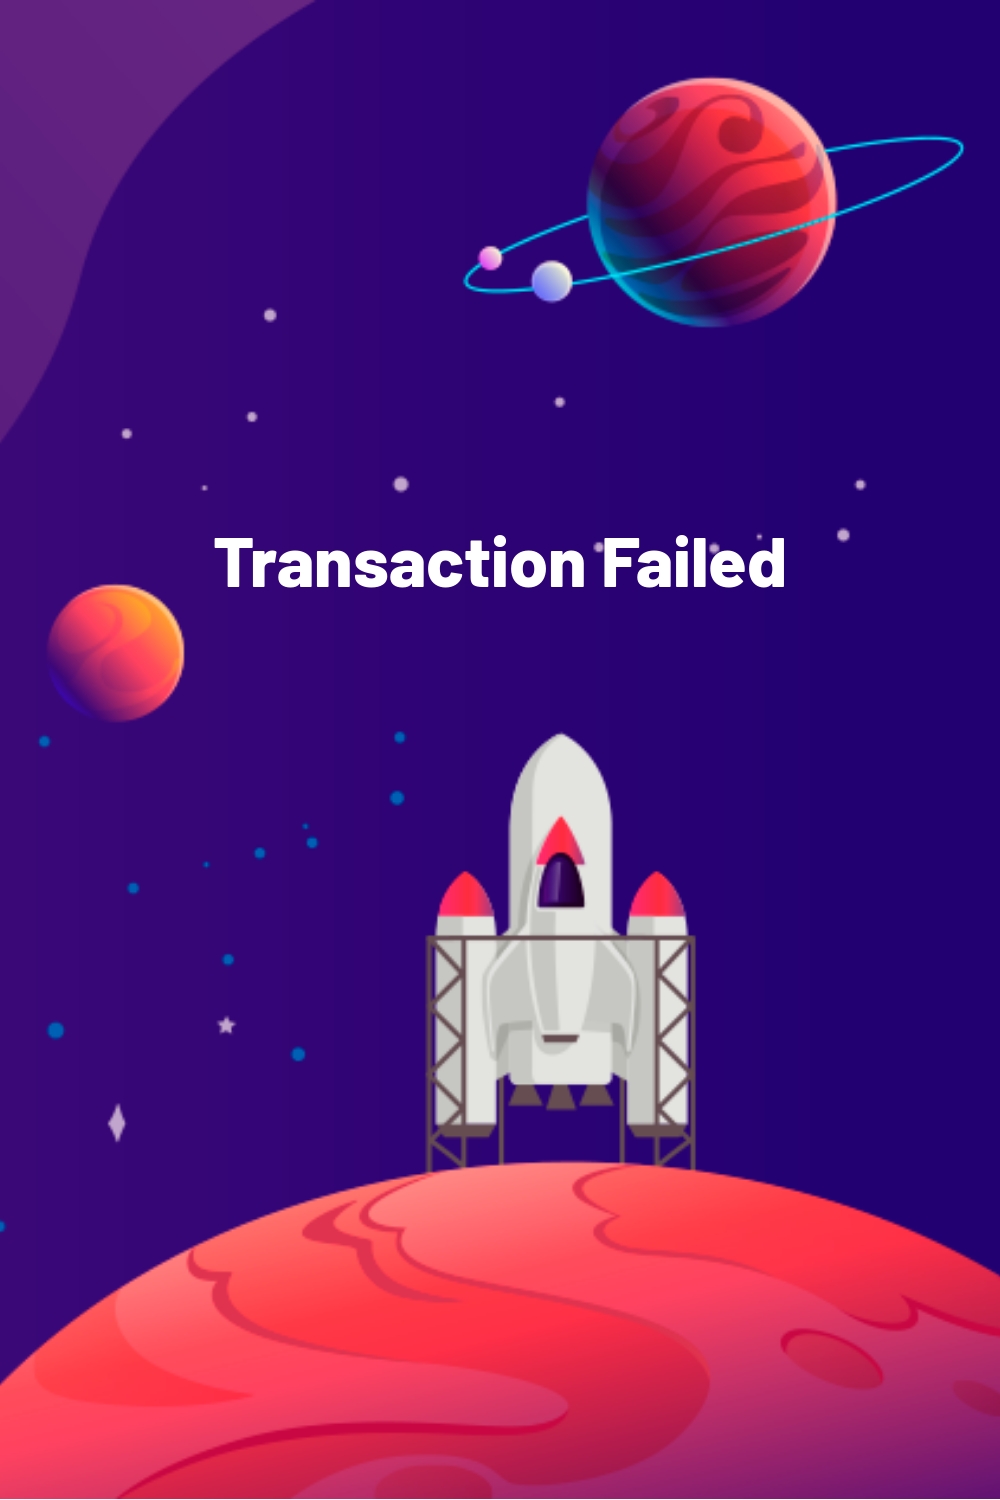 Transaction Failed